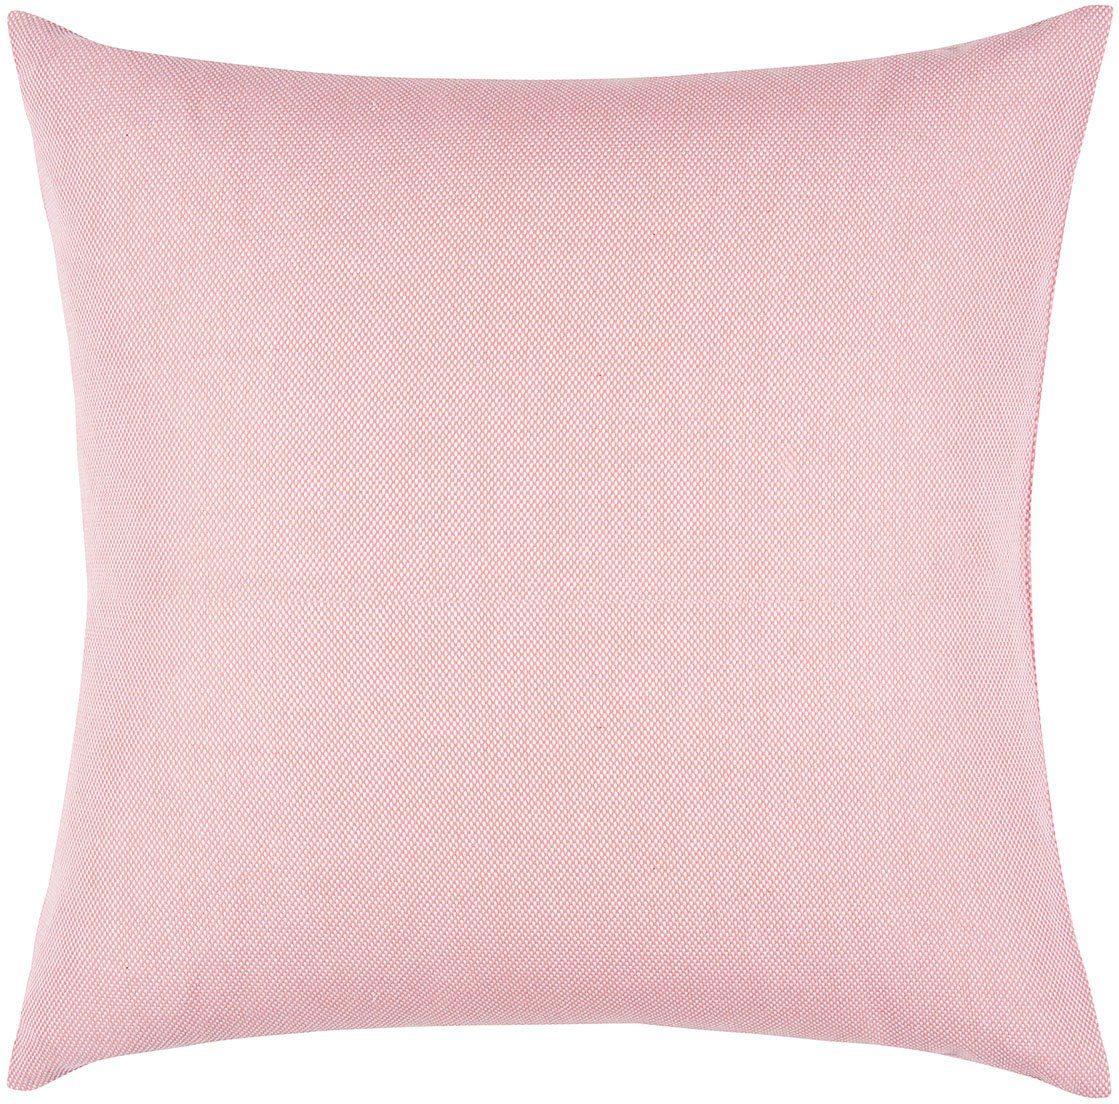 PAD Dekokissen Risotto, einzigartiges pink Design dusty